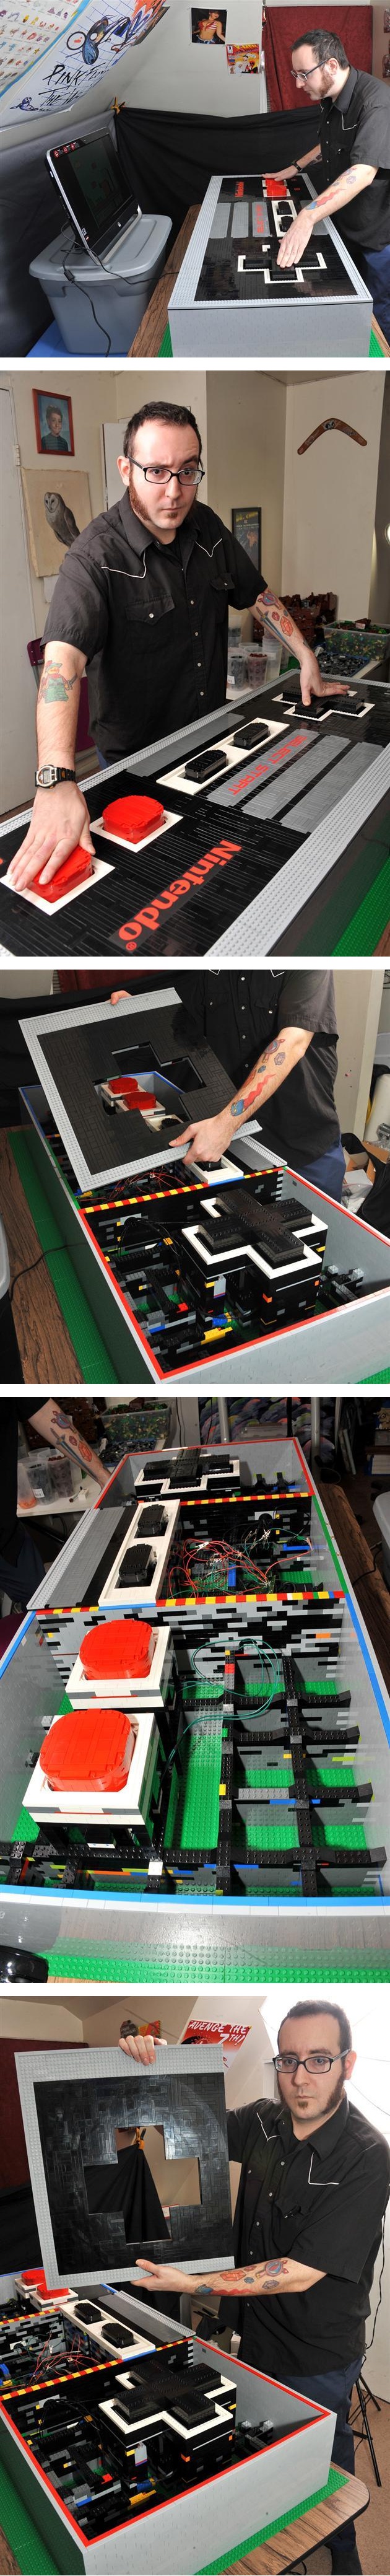 레고로 만든 초대형 닌텐도 게임패드.jpg